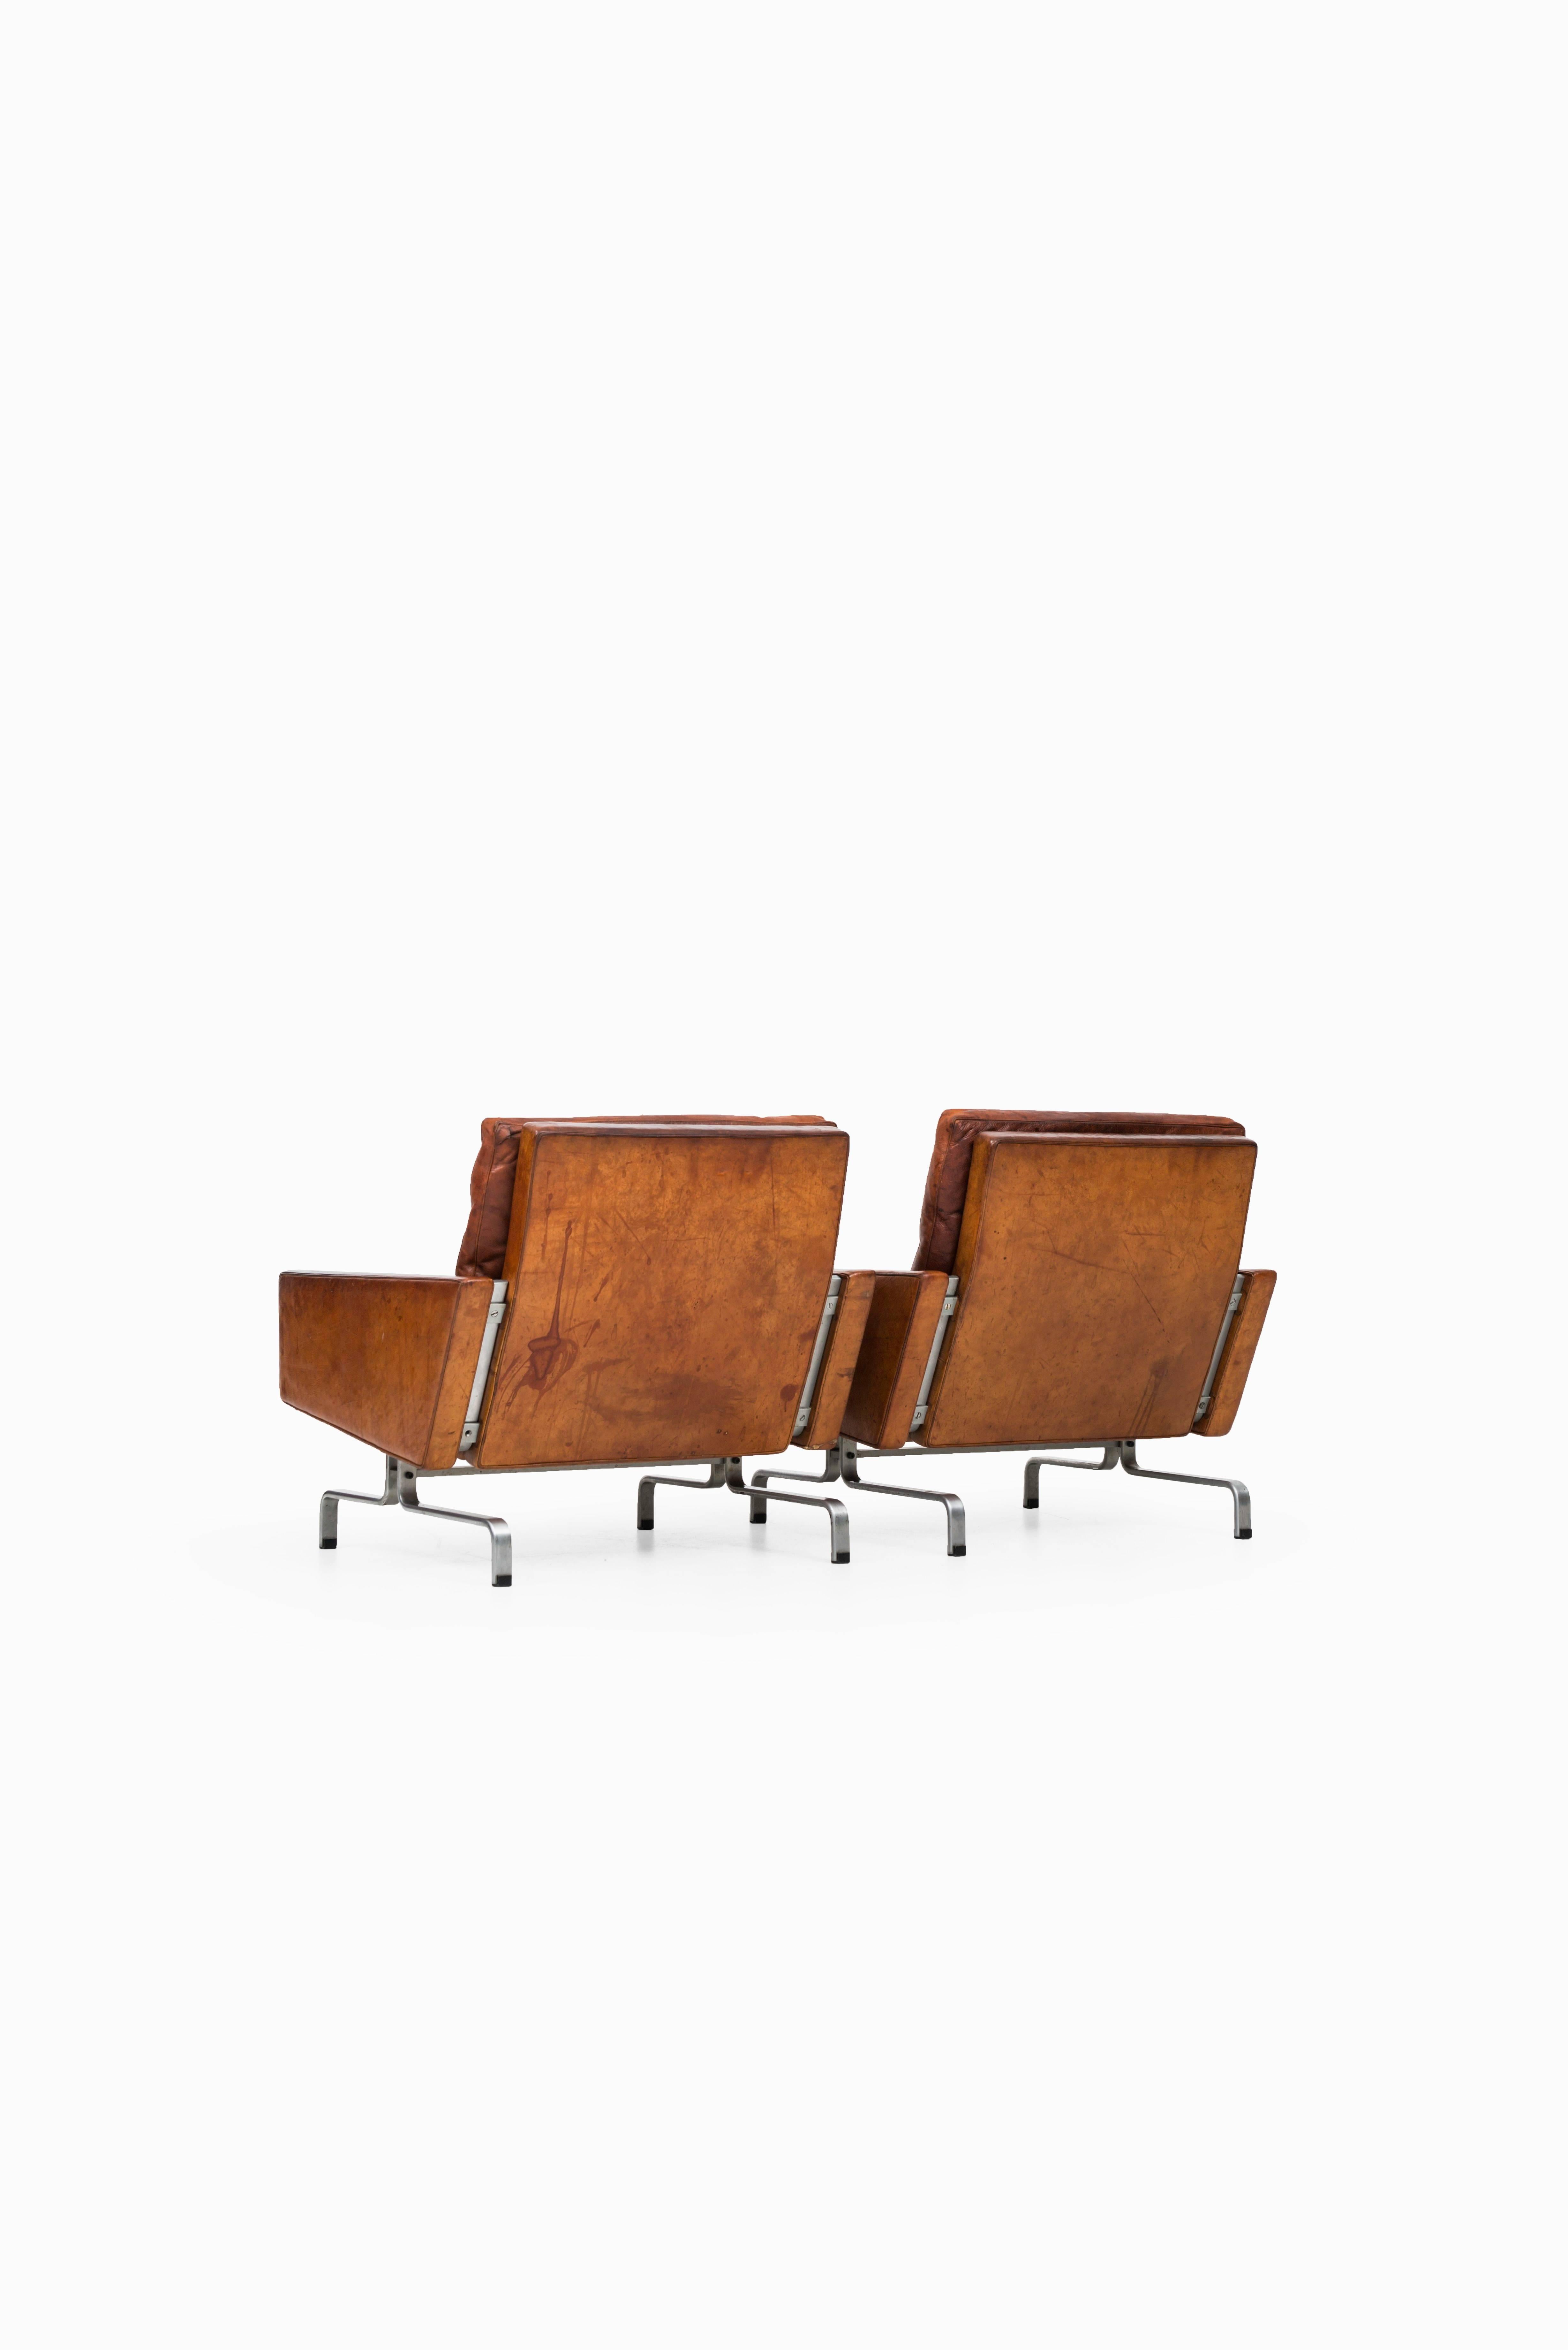 Scandinavian Modern Poul Kjærholm PK-31 Easy Chairs by E. Kold Christensen in Denmark